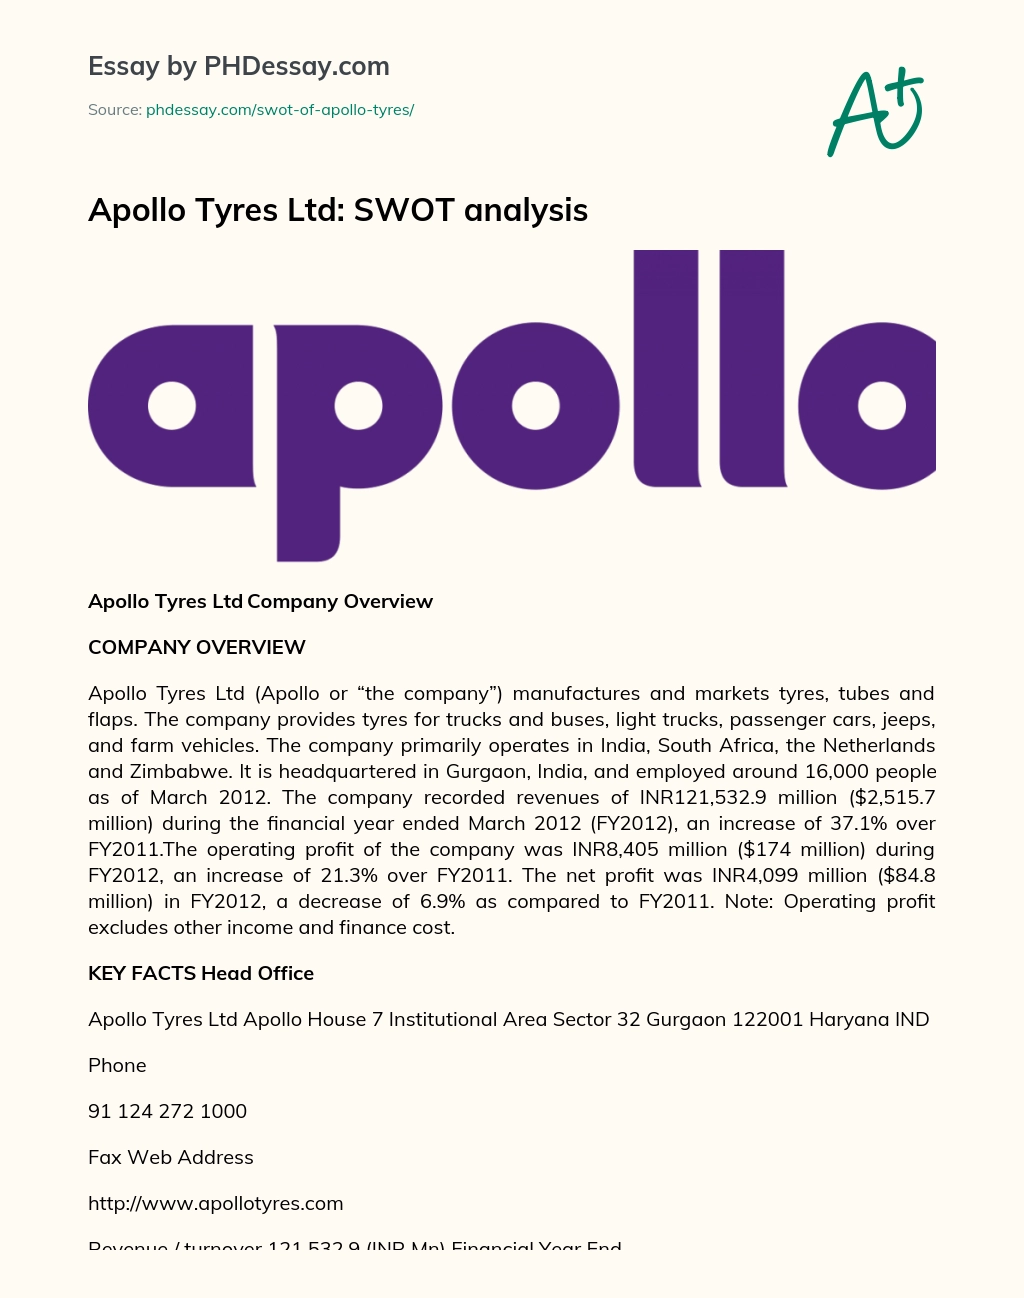 Apollo Tyres Ltd: SWOT analysis essay